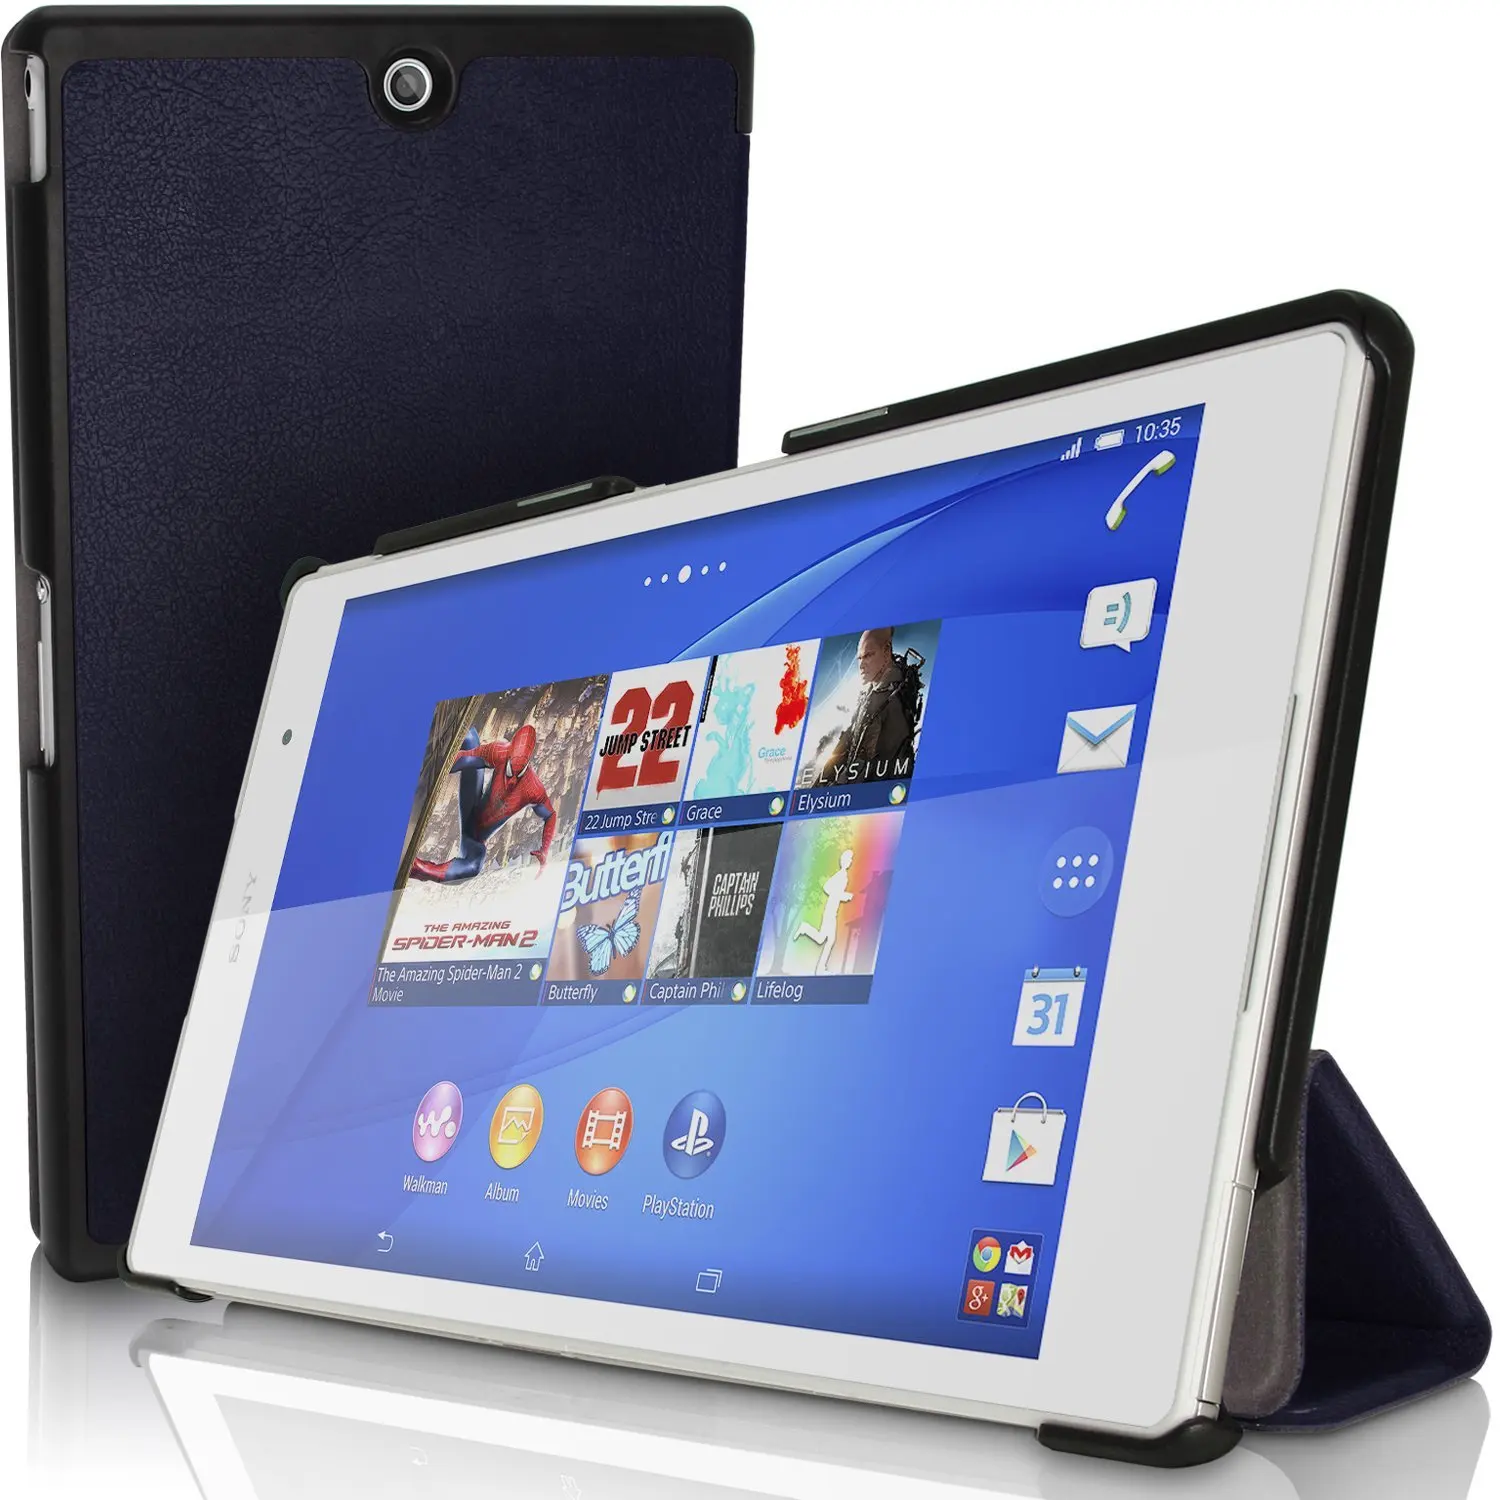 Чехол-накладка для sony Xperia Z3 Tablet Compact 8 дюймов на магните Хлопковый чехол из искусственной кожи чехол для Xperia Z3 Funda чехол